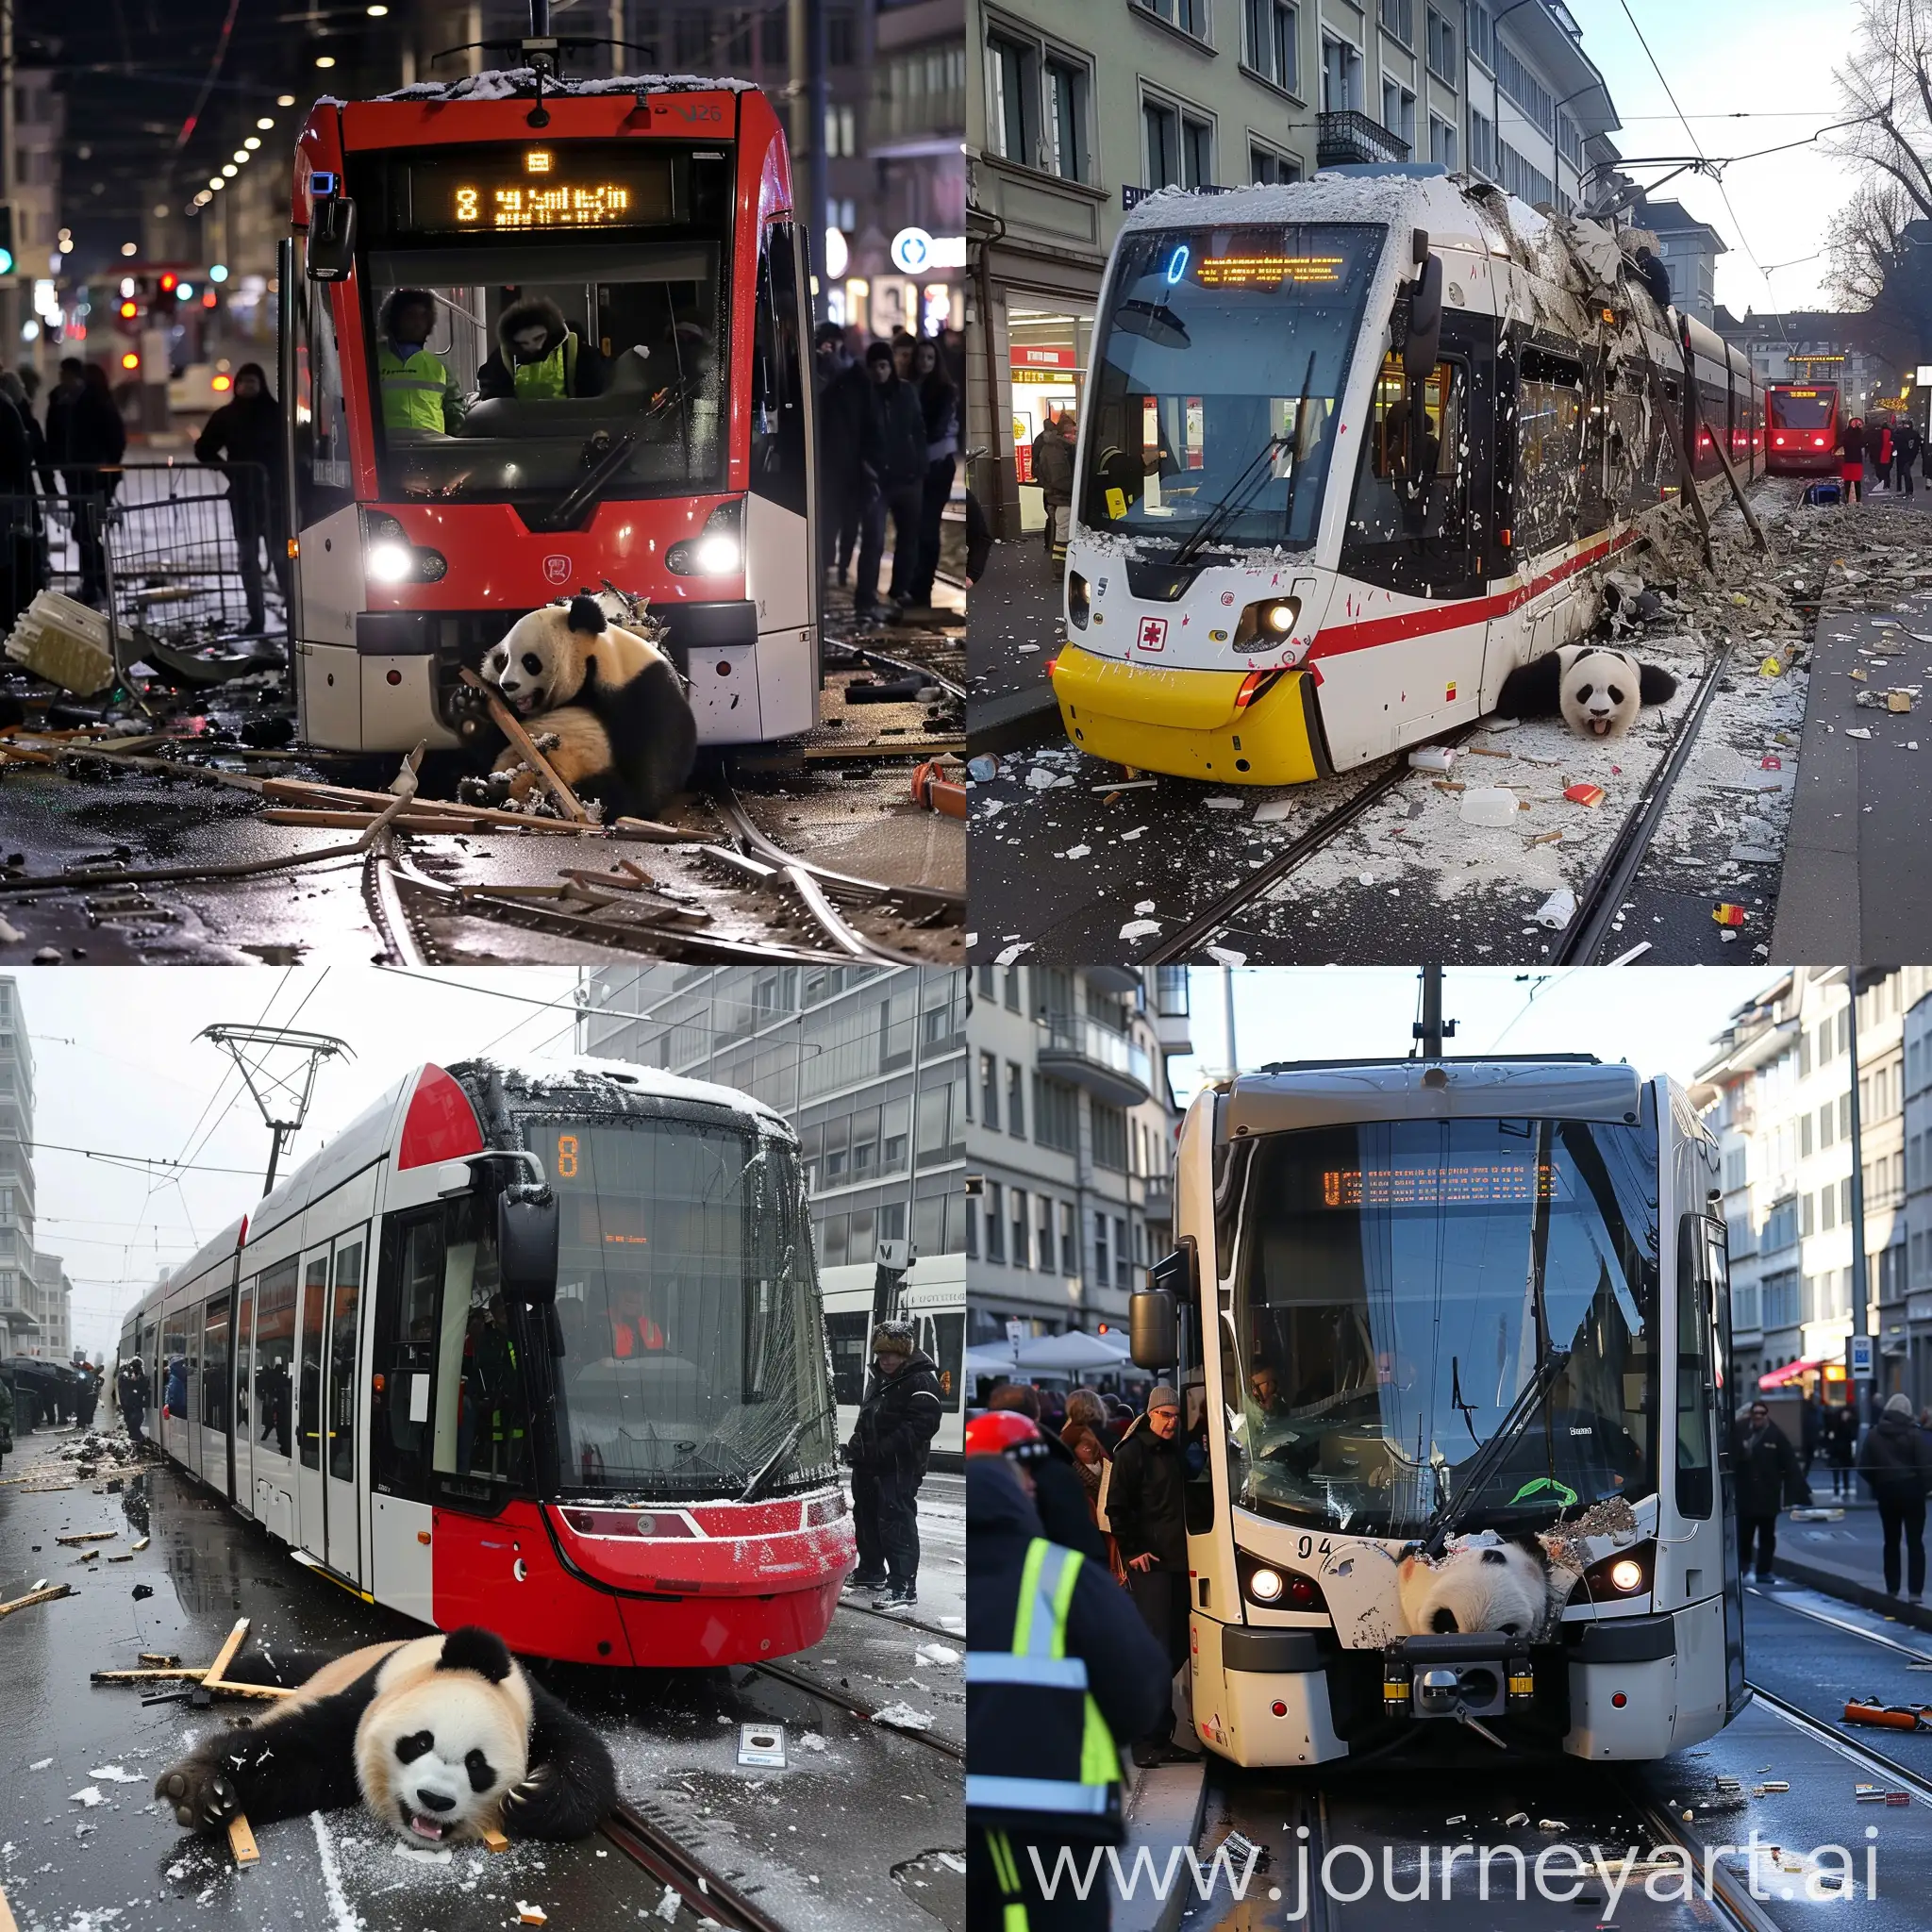 Zurich tram dead after an impact with a human panda